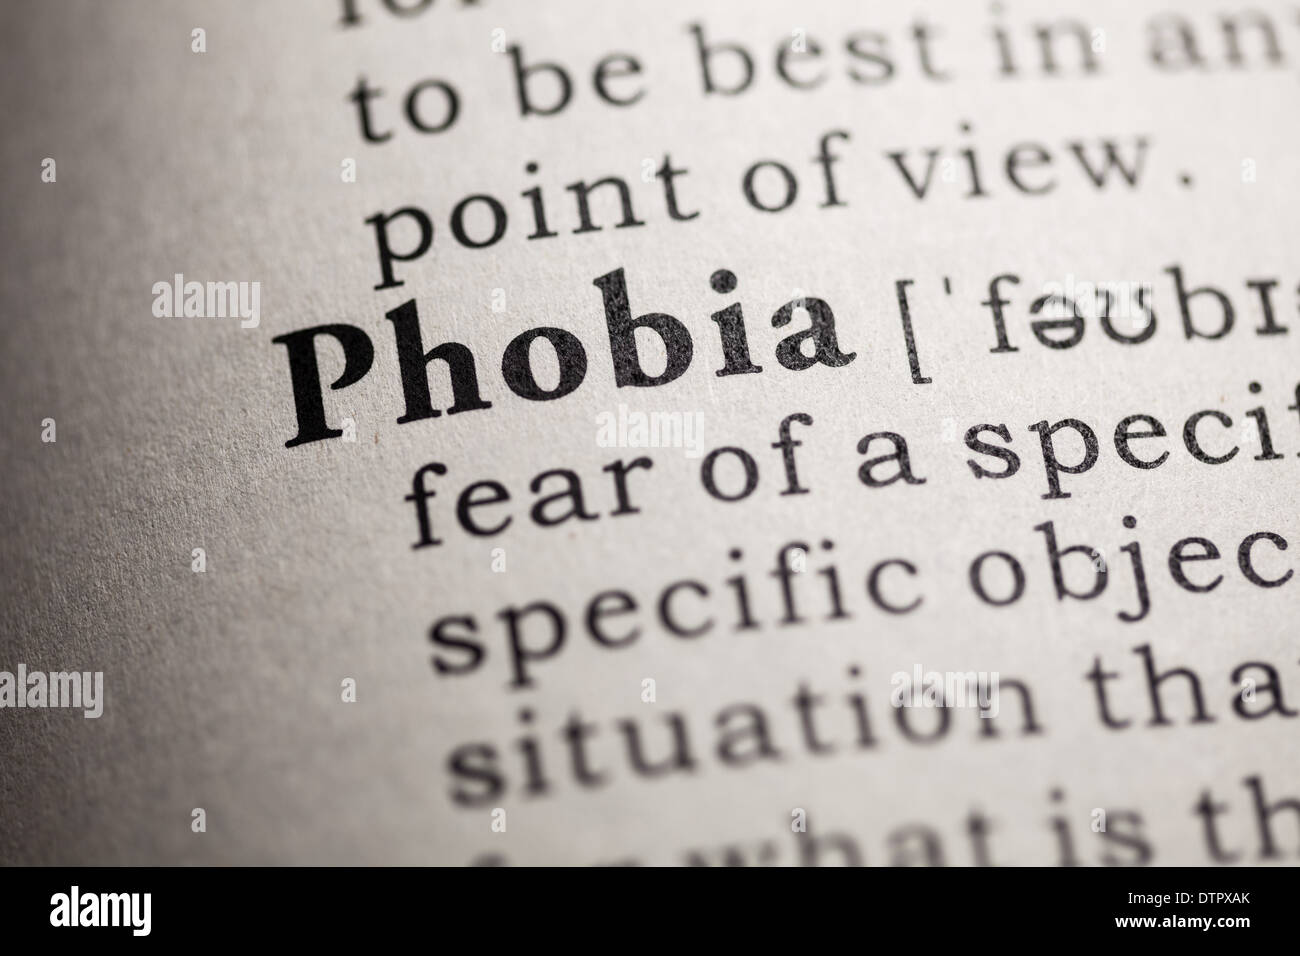 Fake Dizionario, definizione del dizionario della parola fobia. Foto Stock